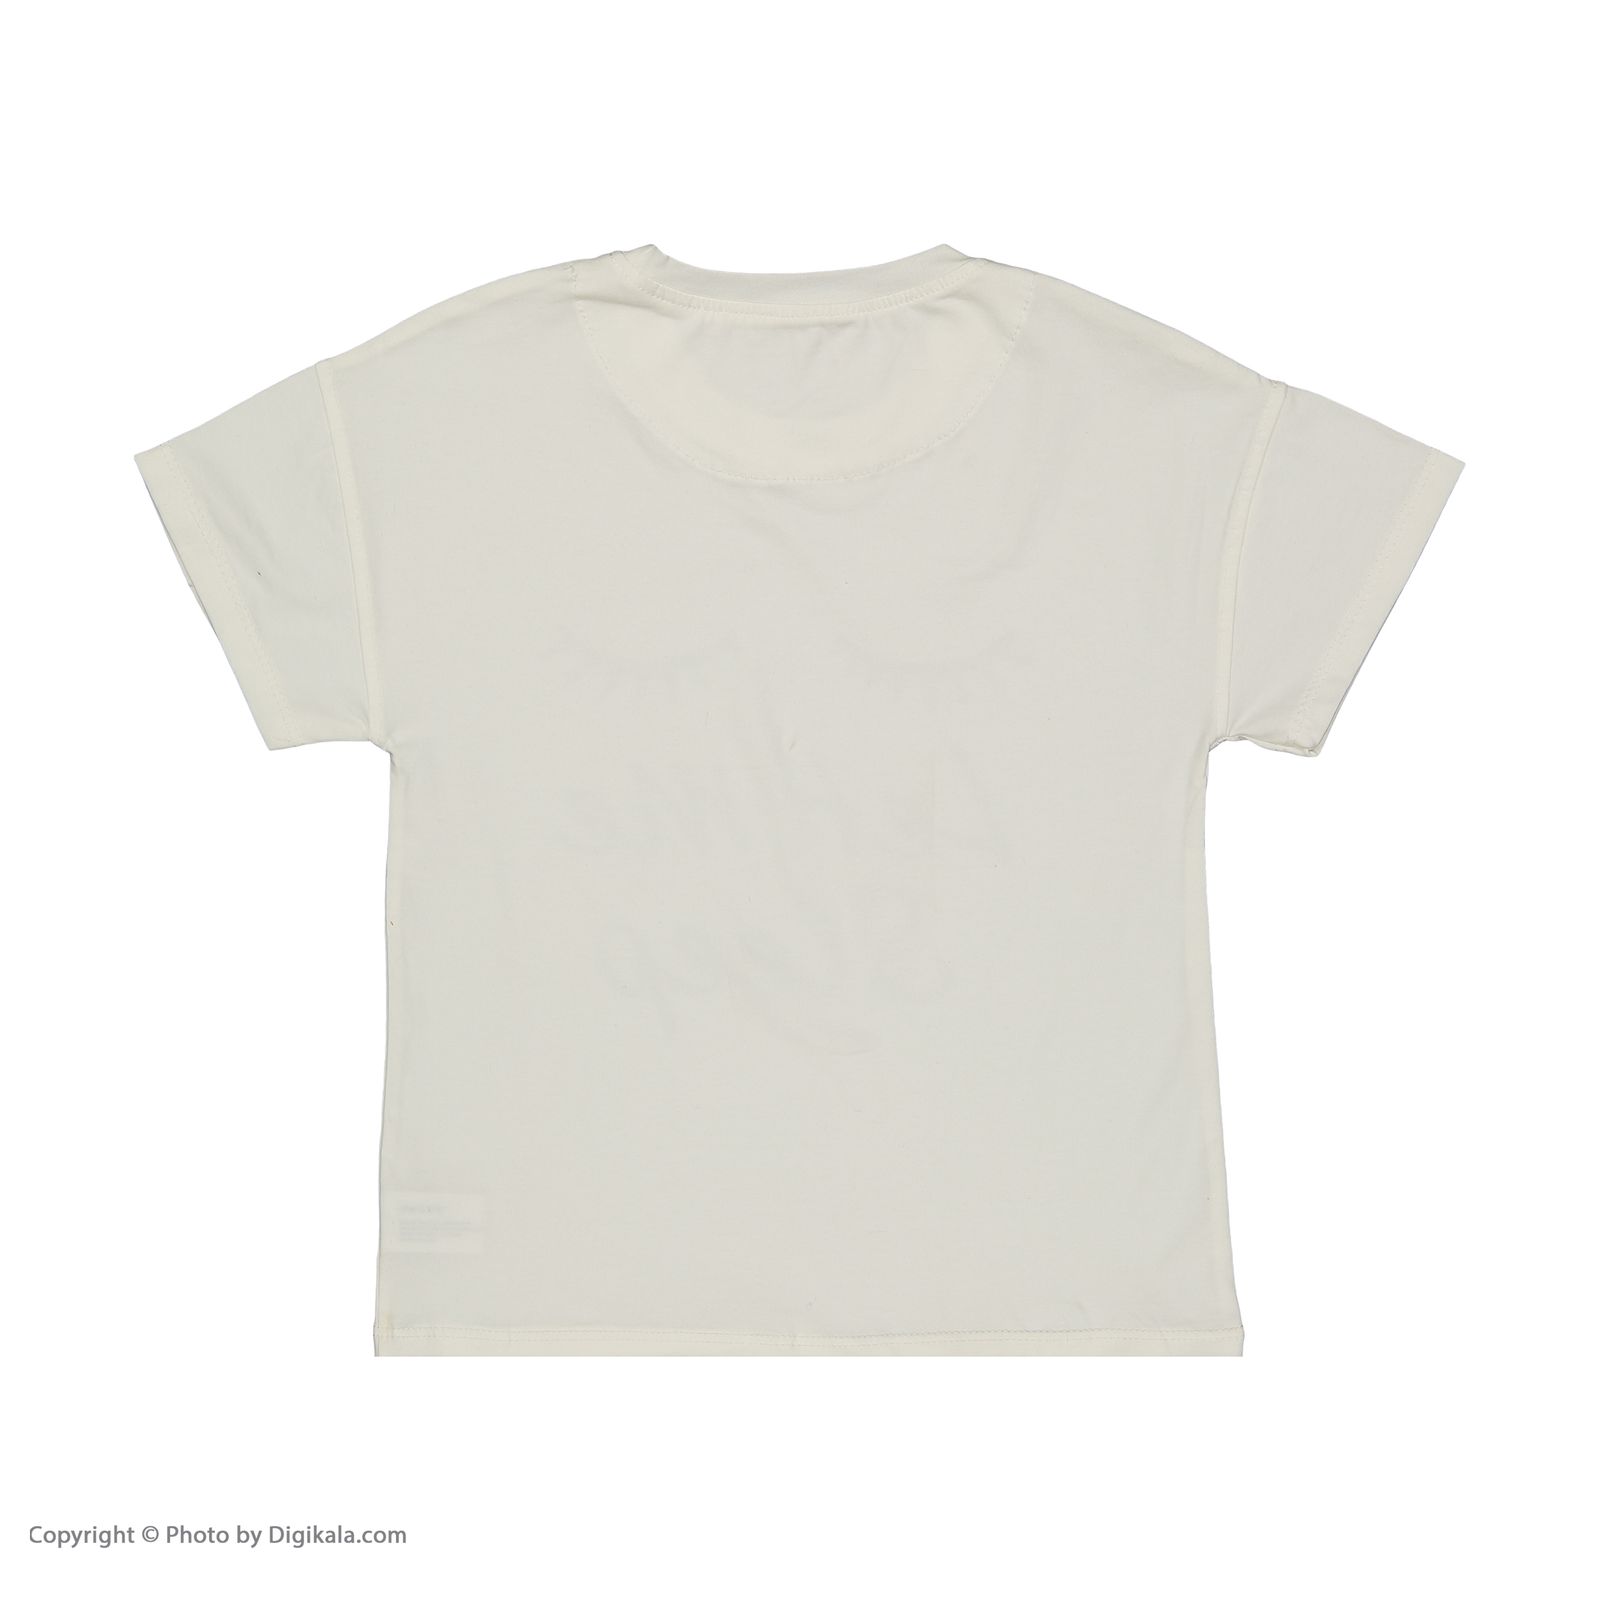 ست تی شرت و شلوارک دخترانه تودوک مدل 2151317-01 -  - 5